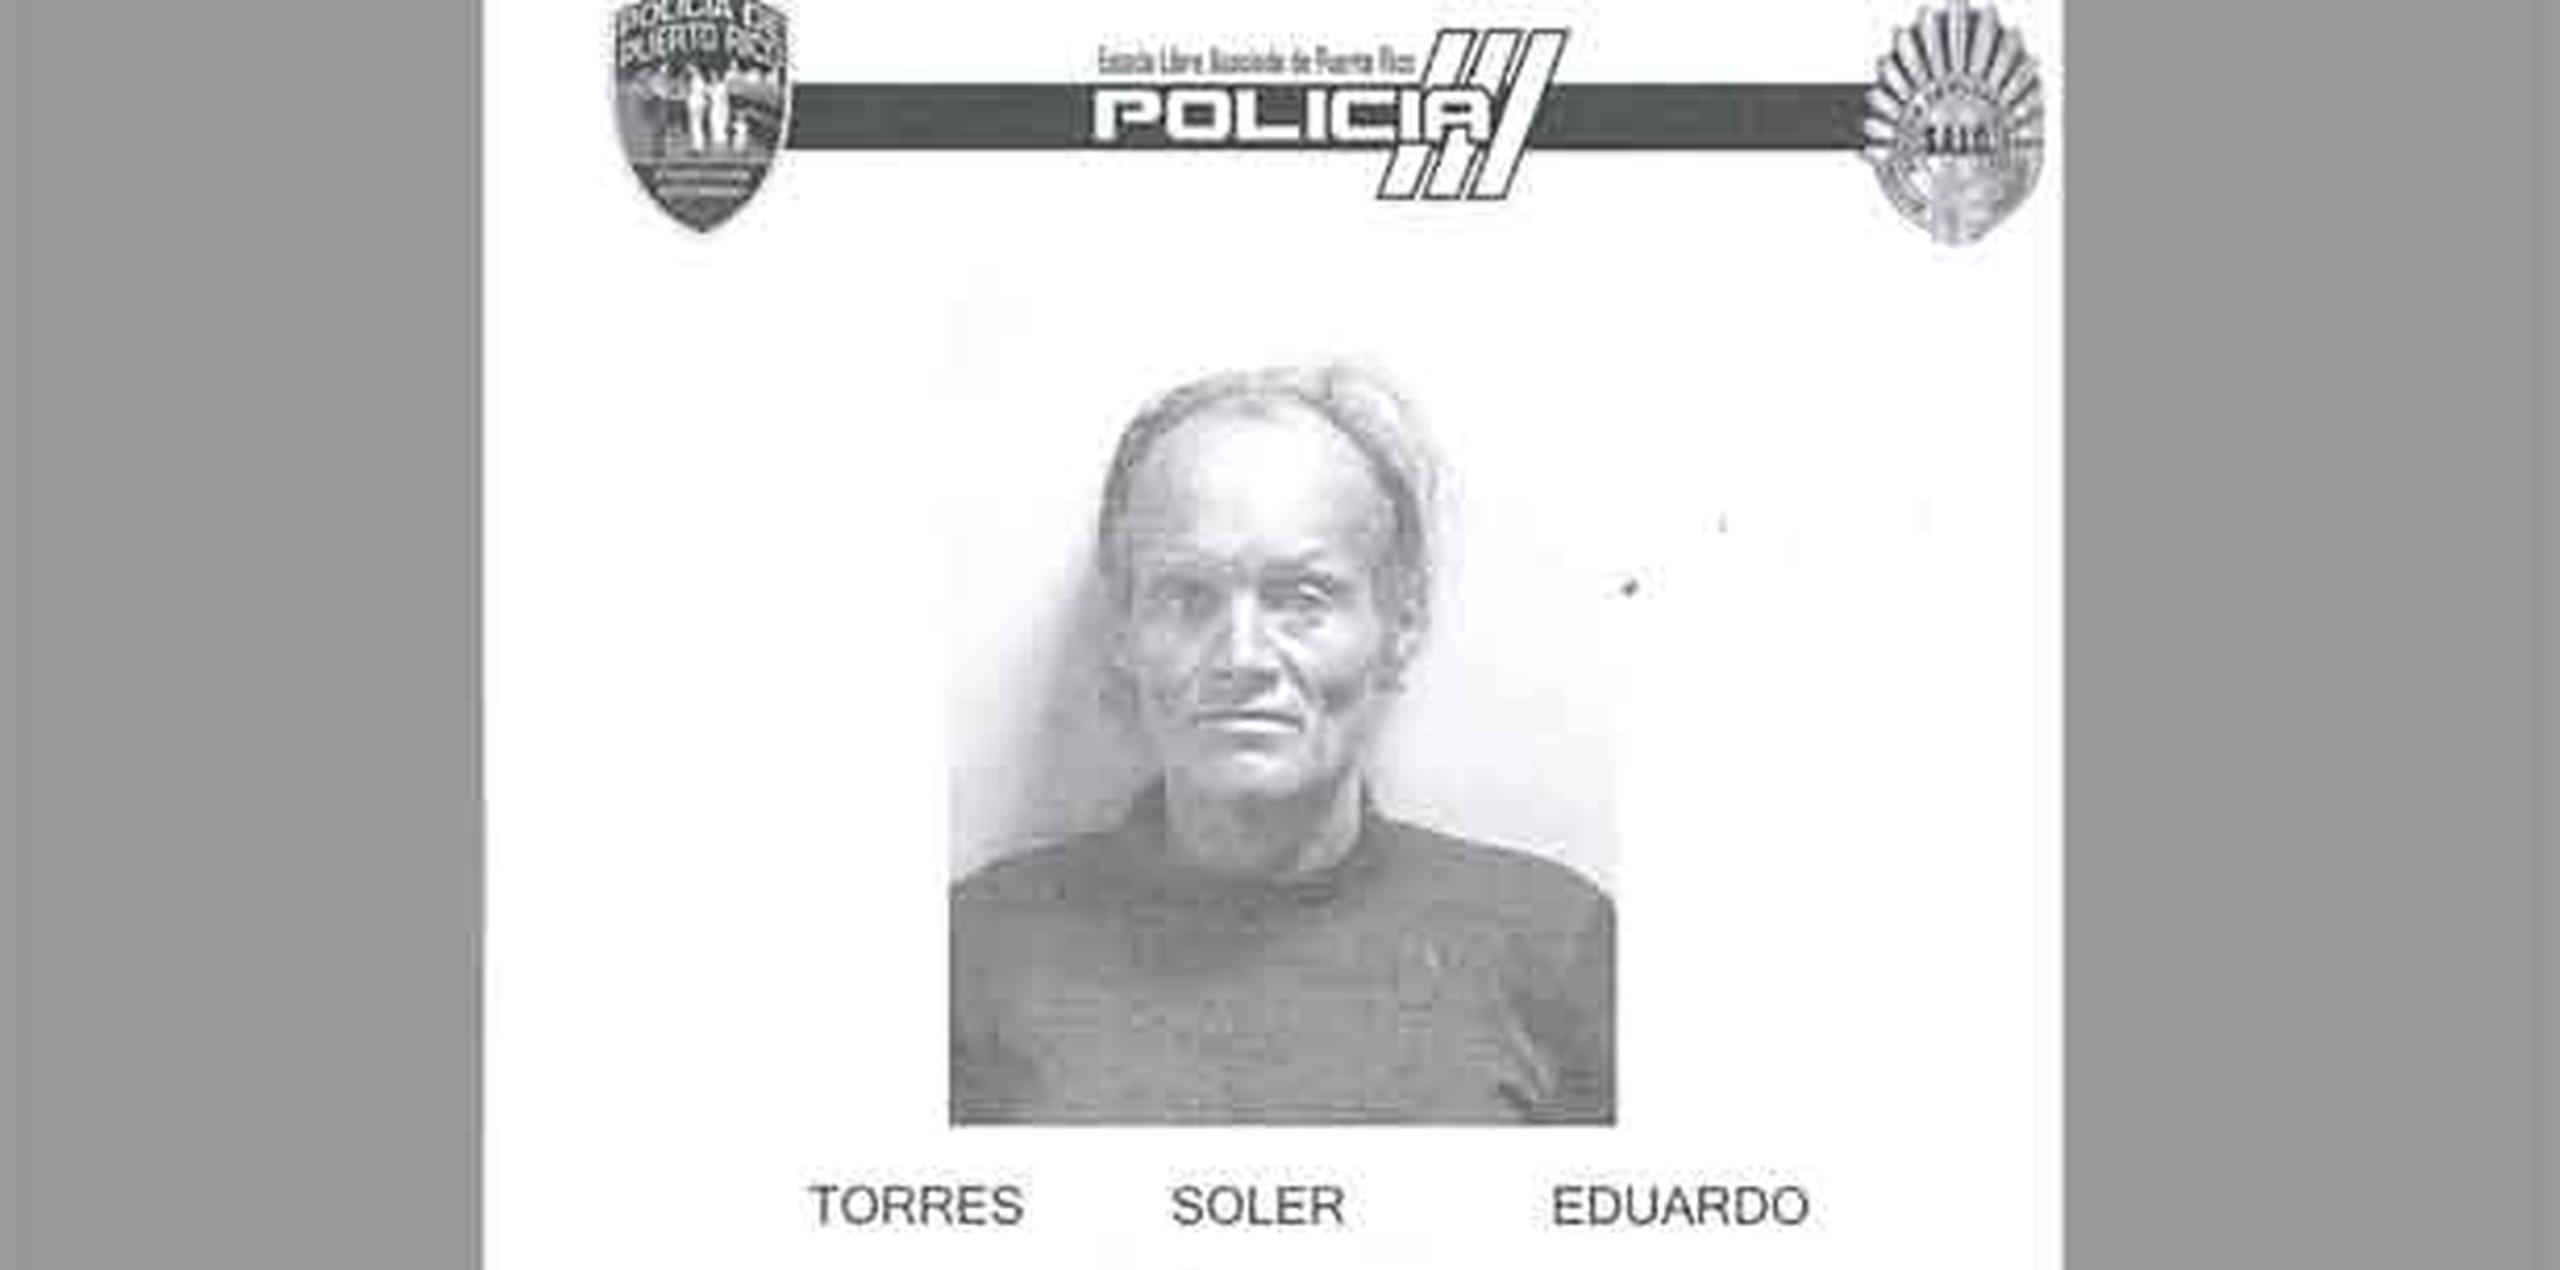 Eduardo Torres Soler, de 47 años de edad y vecino de Juana Díaz, enfrenta un cargo por agresión sexual y otro por maltrato de menores. (Suministrada)